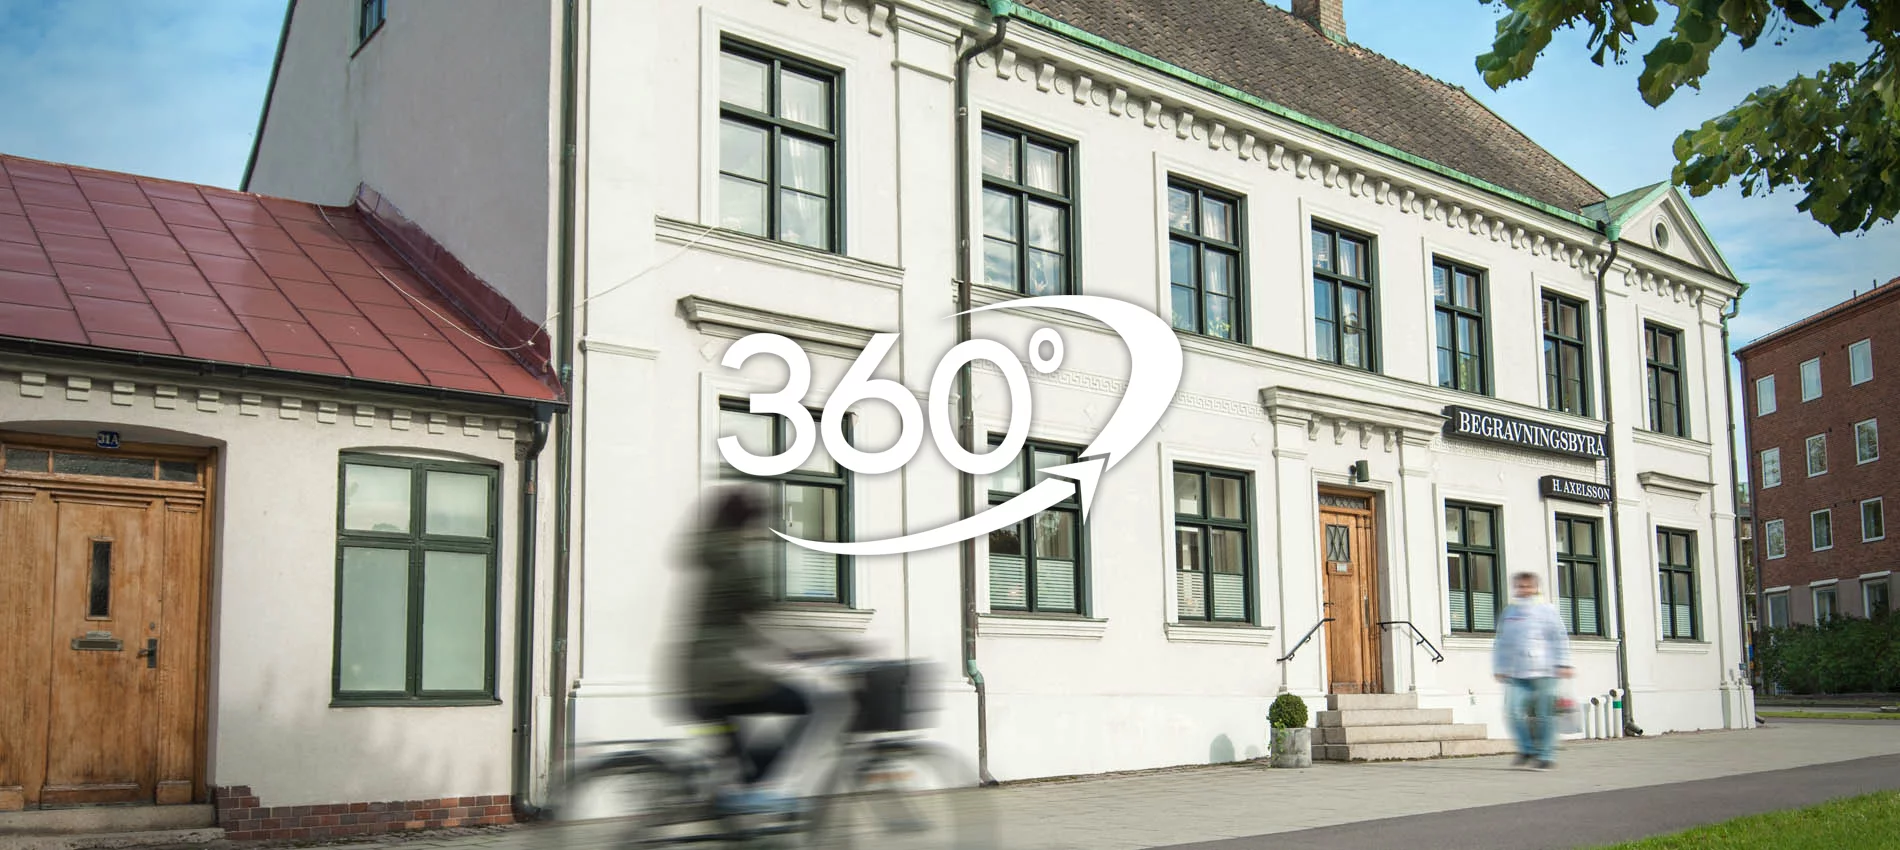 Axelssons Begravningsbyrå - 360° virtuell rundvandring - Varmt välkommen in